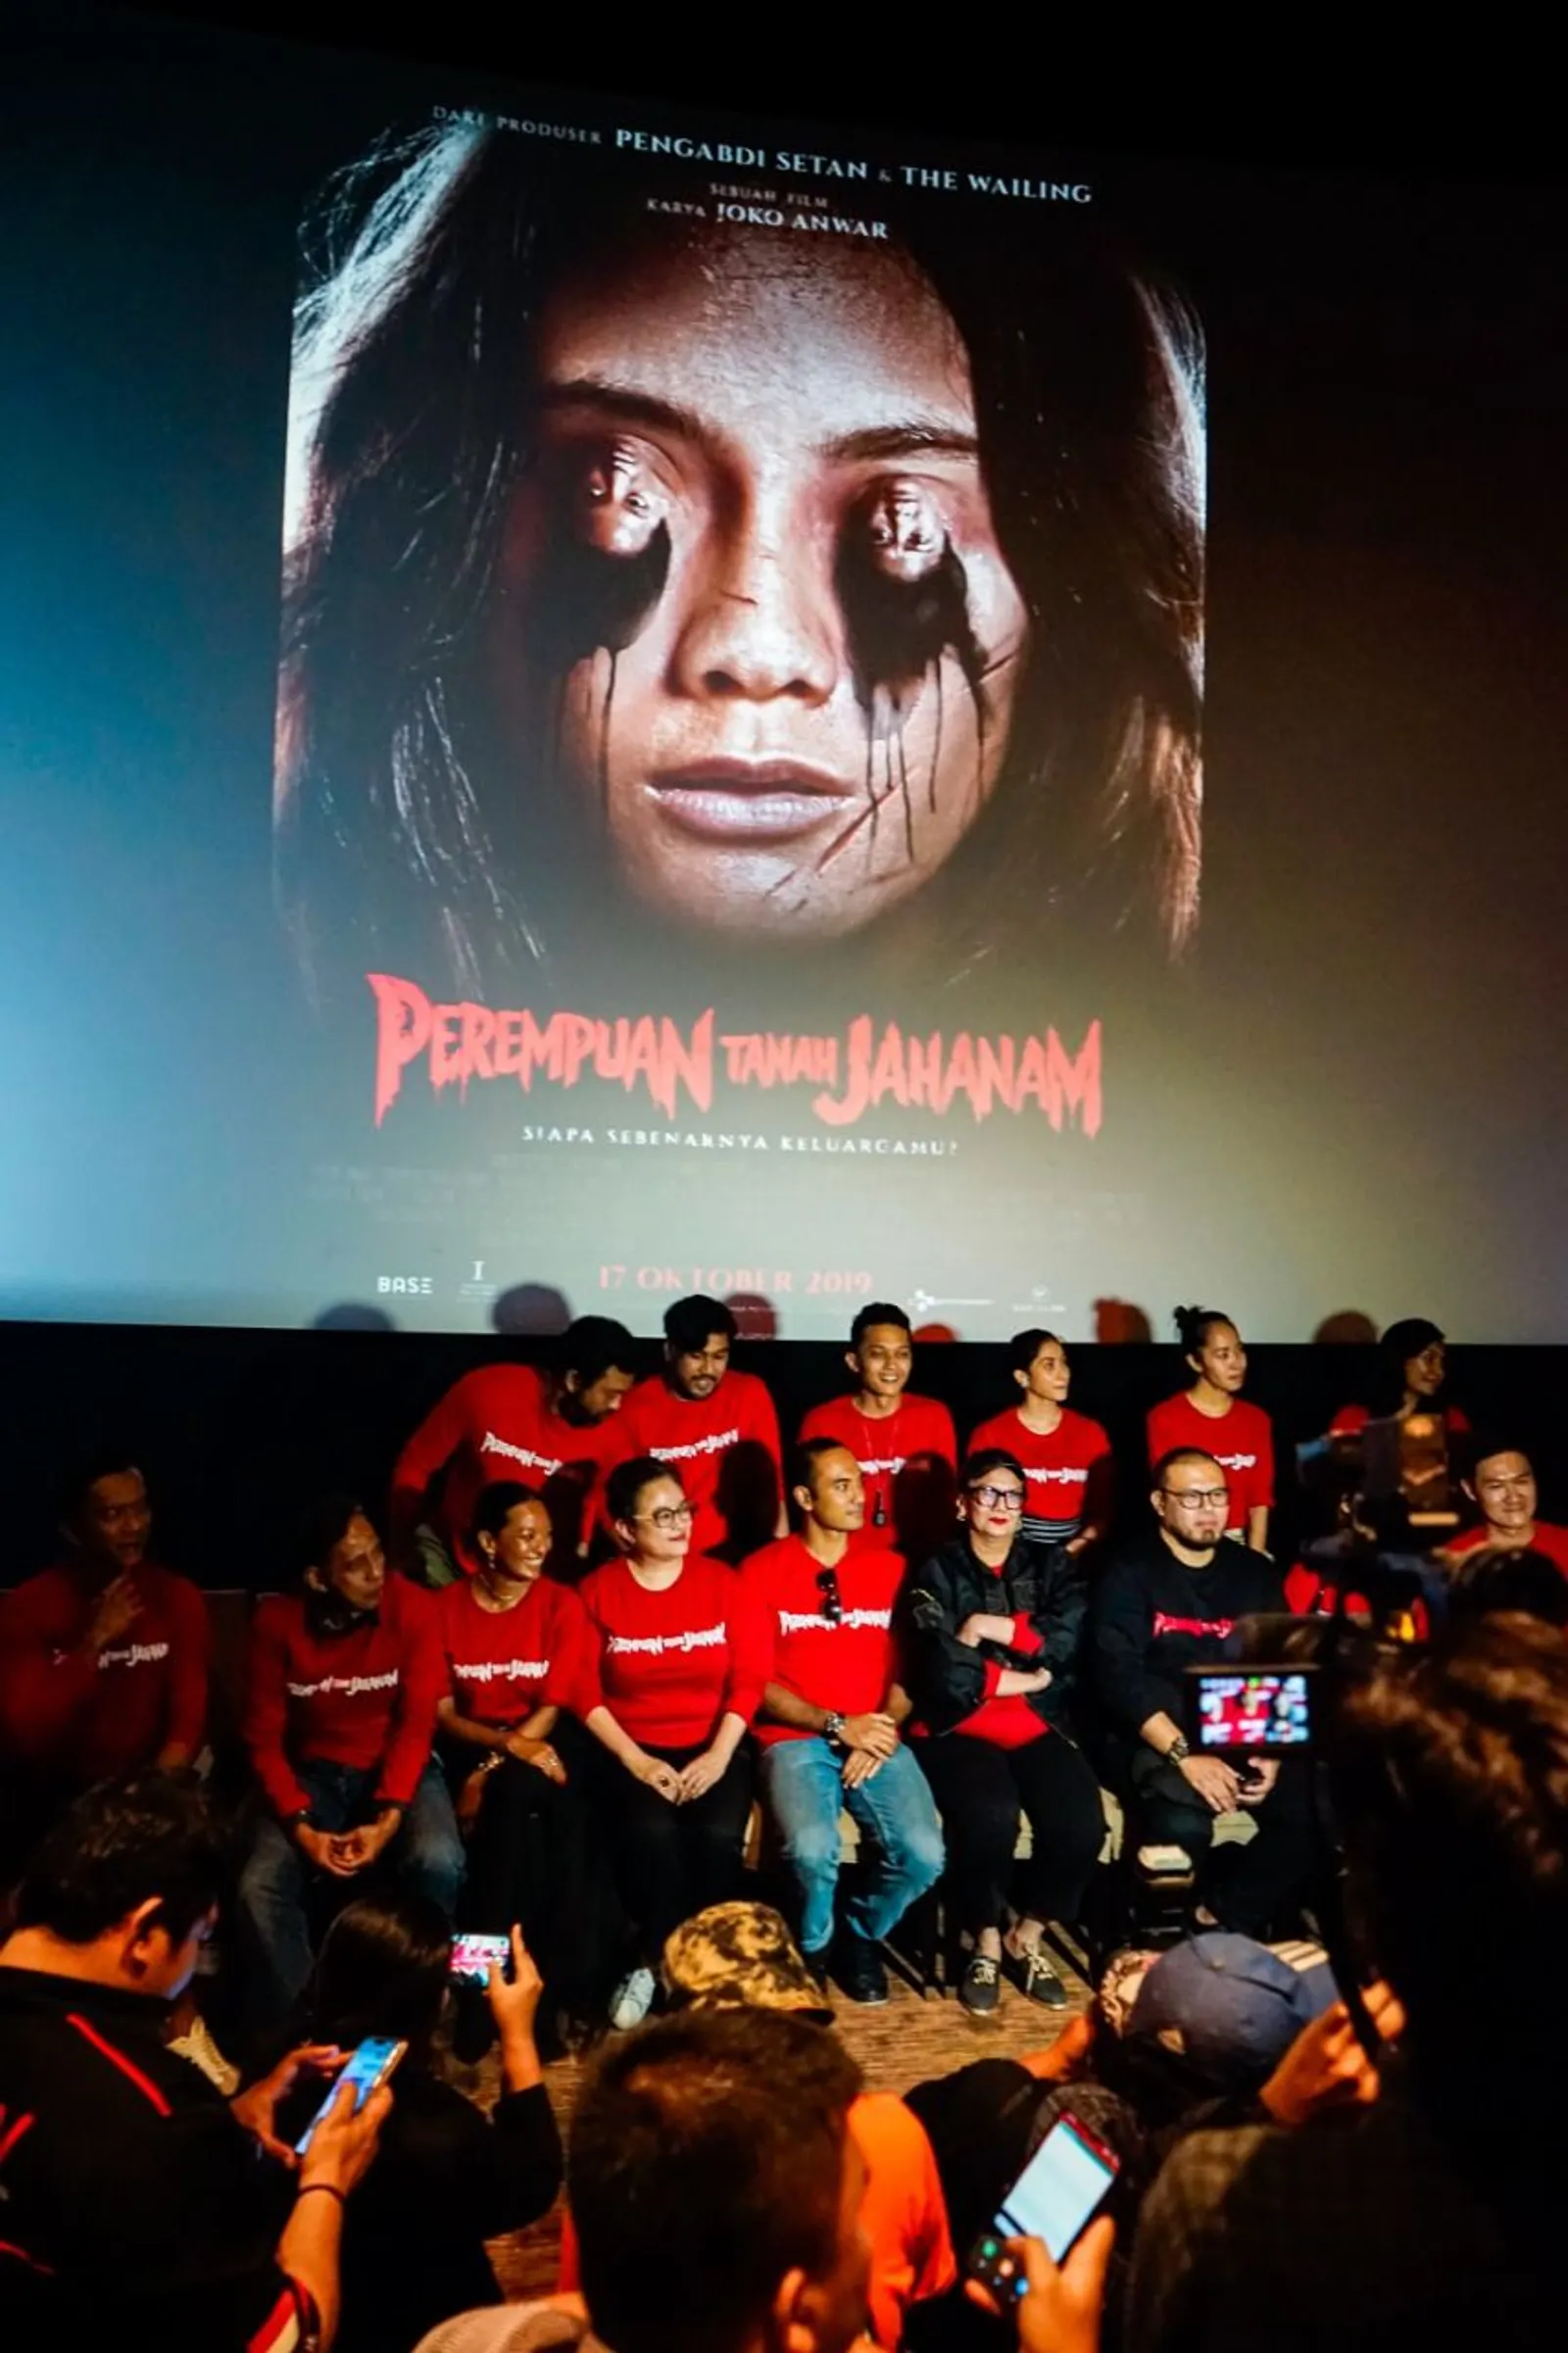 Paling Seram dan Makan Waktu 11 Tahun, Ini Fakta Film Horor Joko Anwar